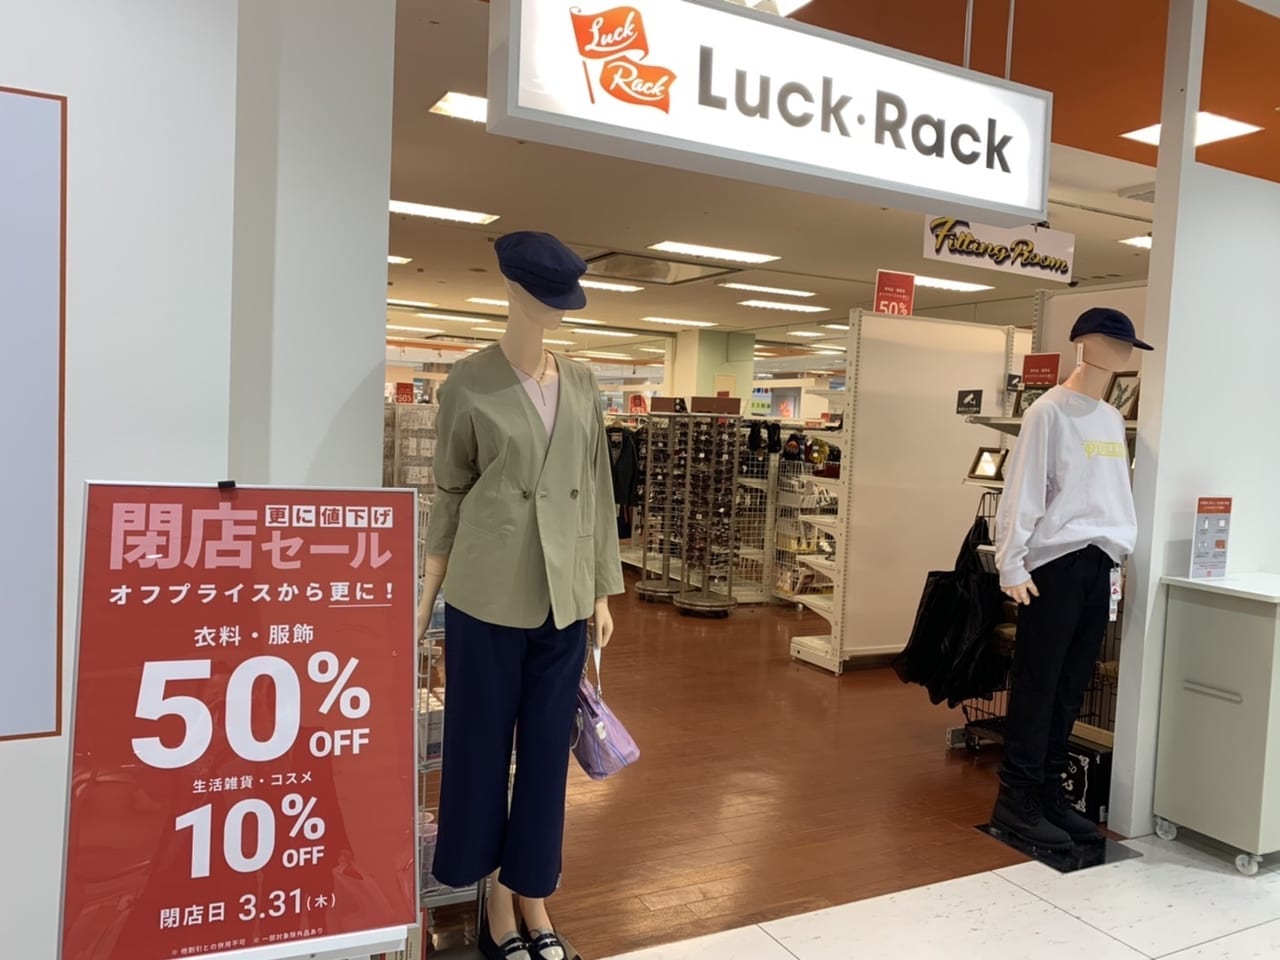 Luck Rack